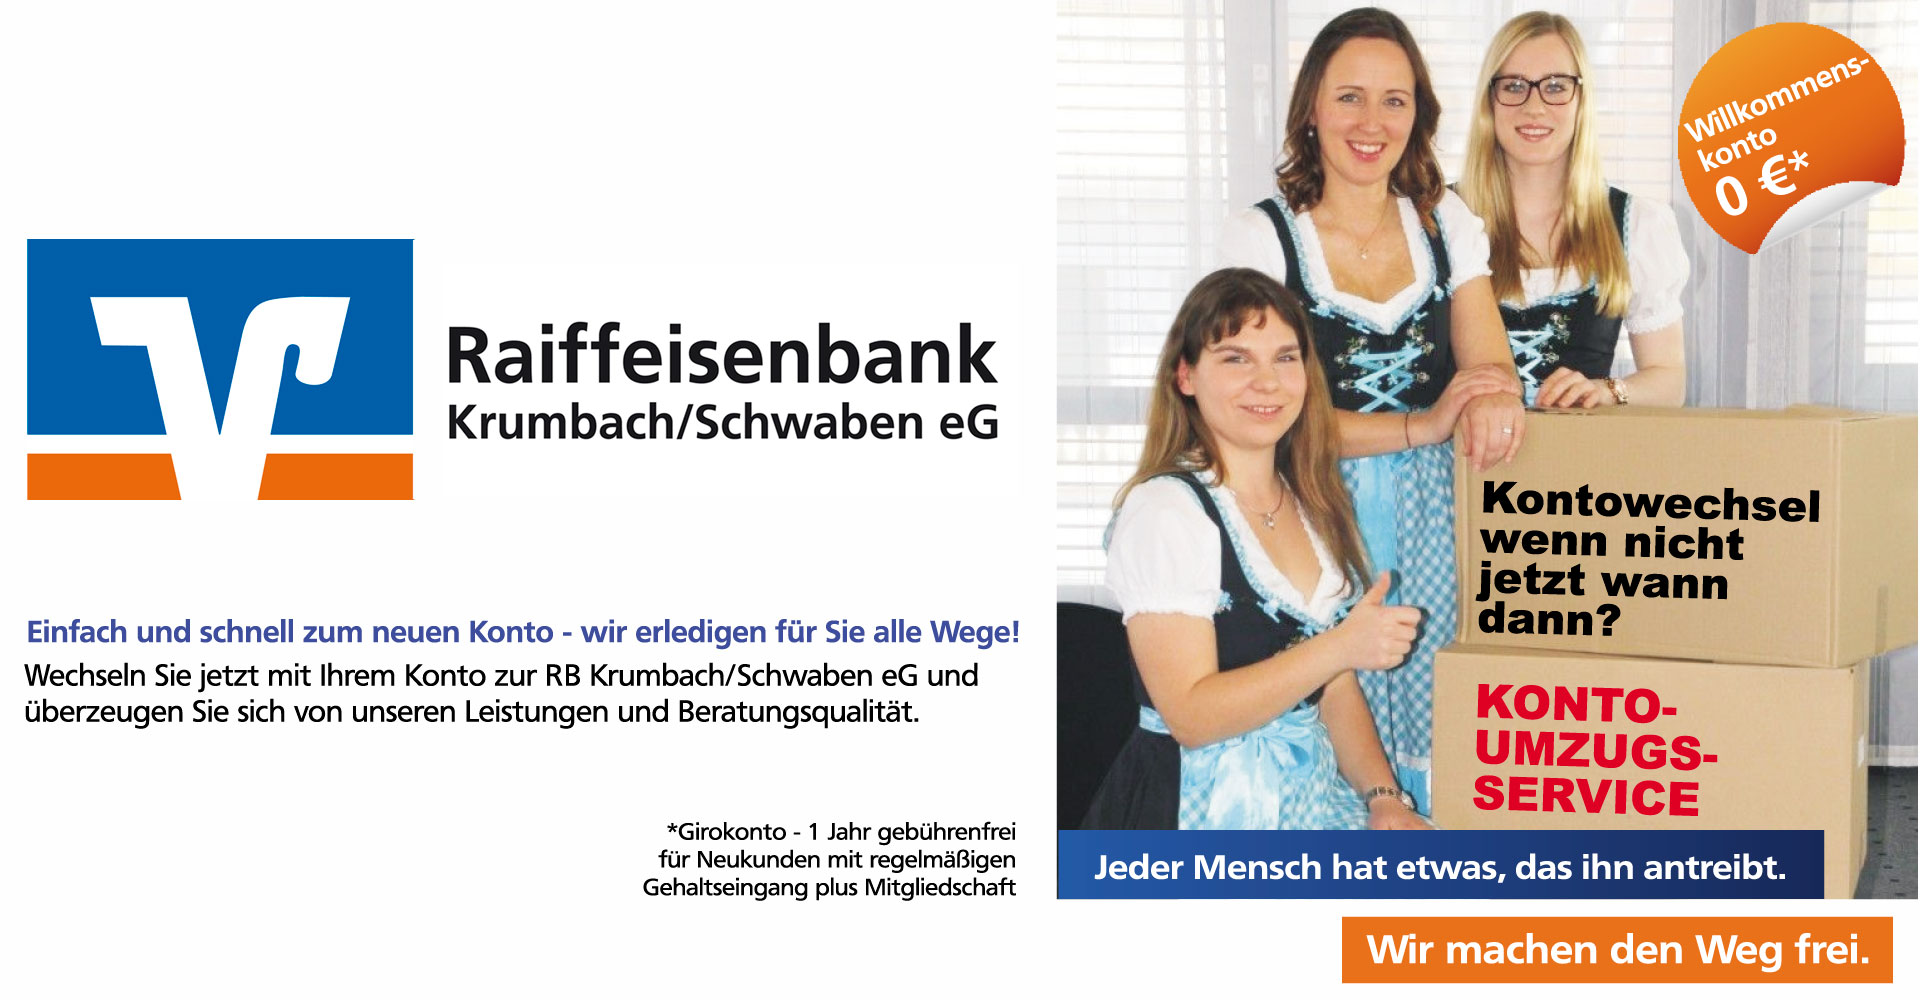 Partner Live am Marktplatz - Raiffeisenbank Krumbach eG